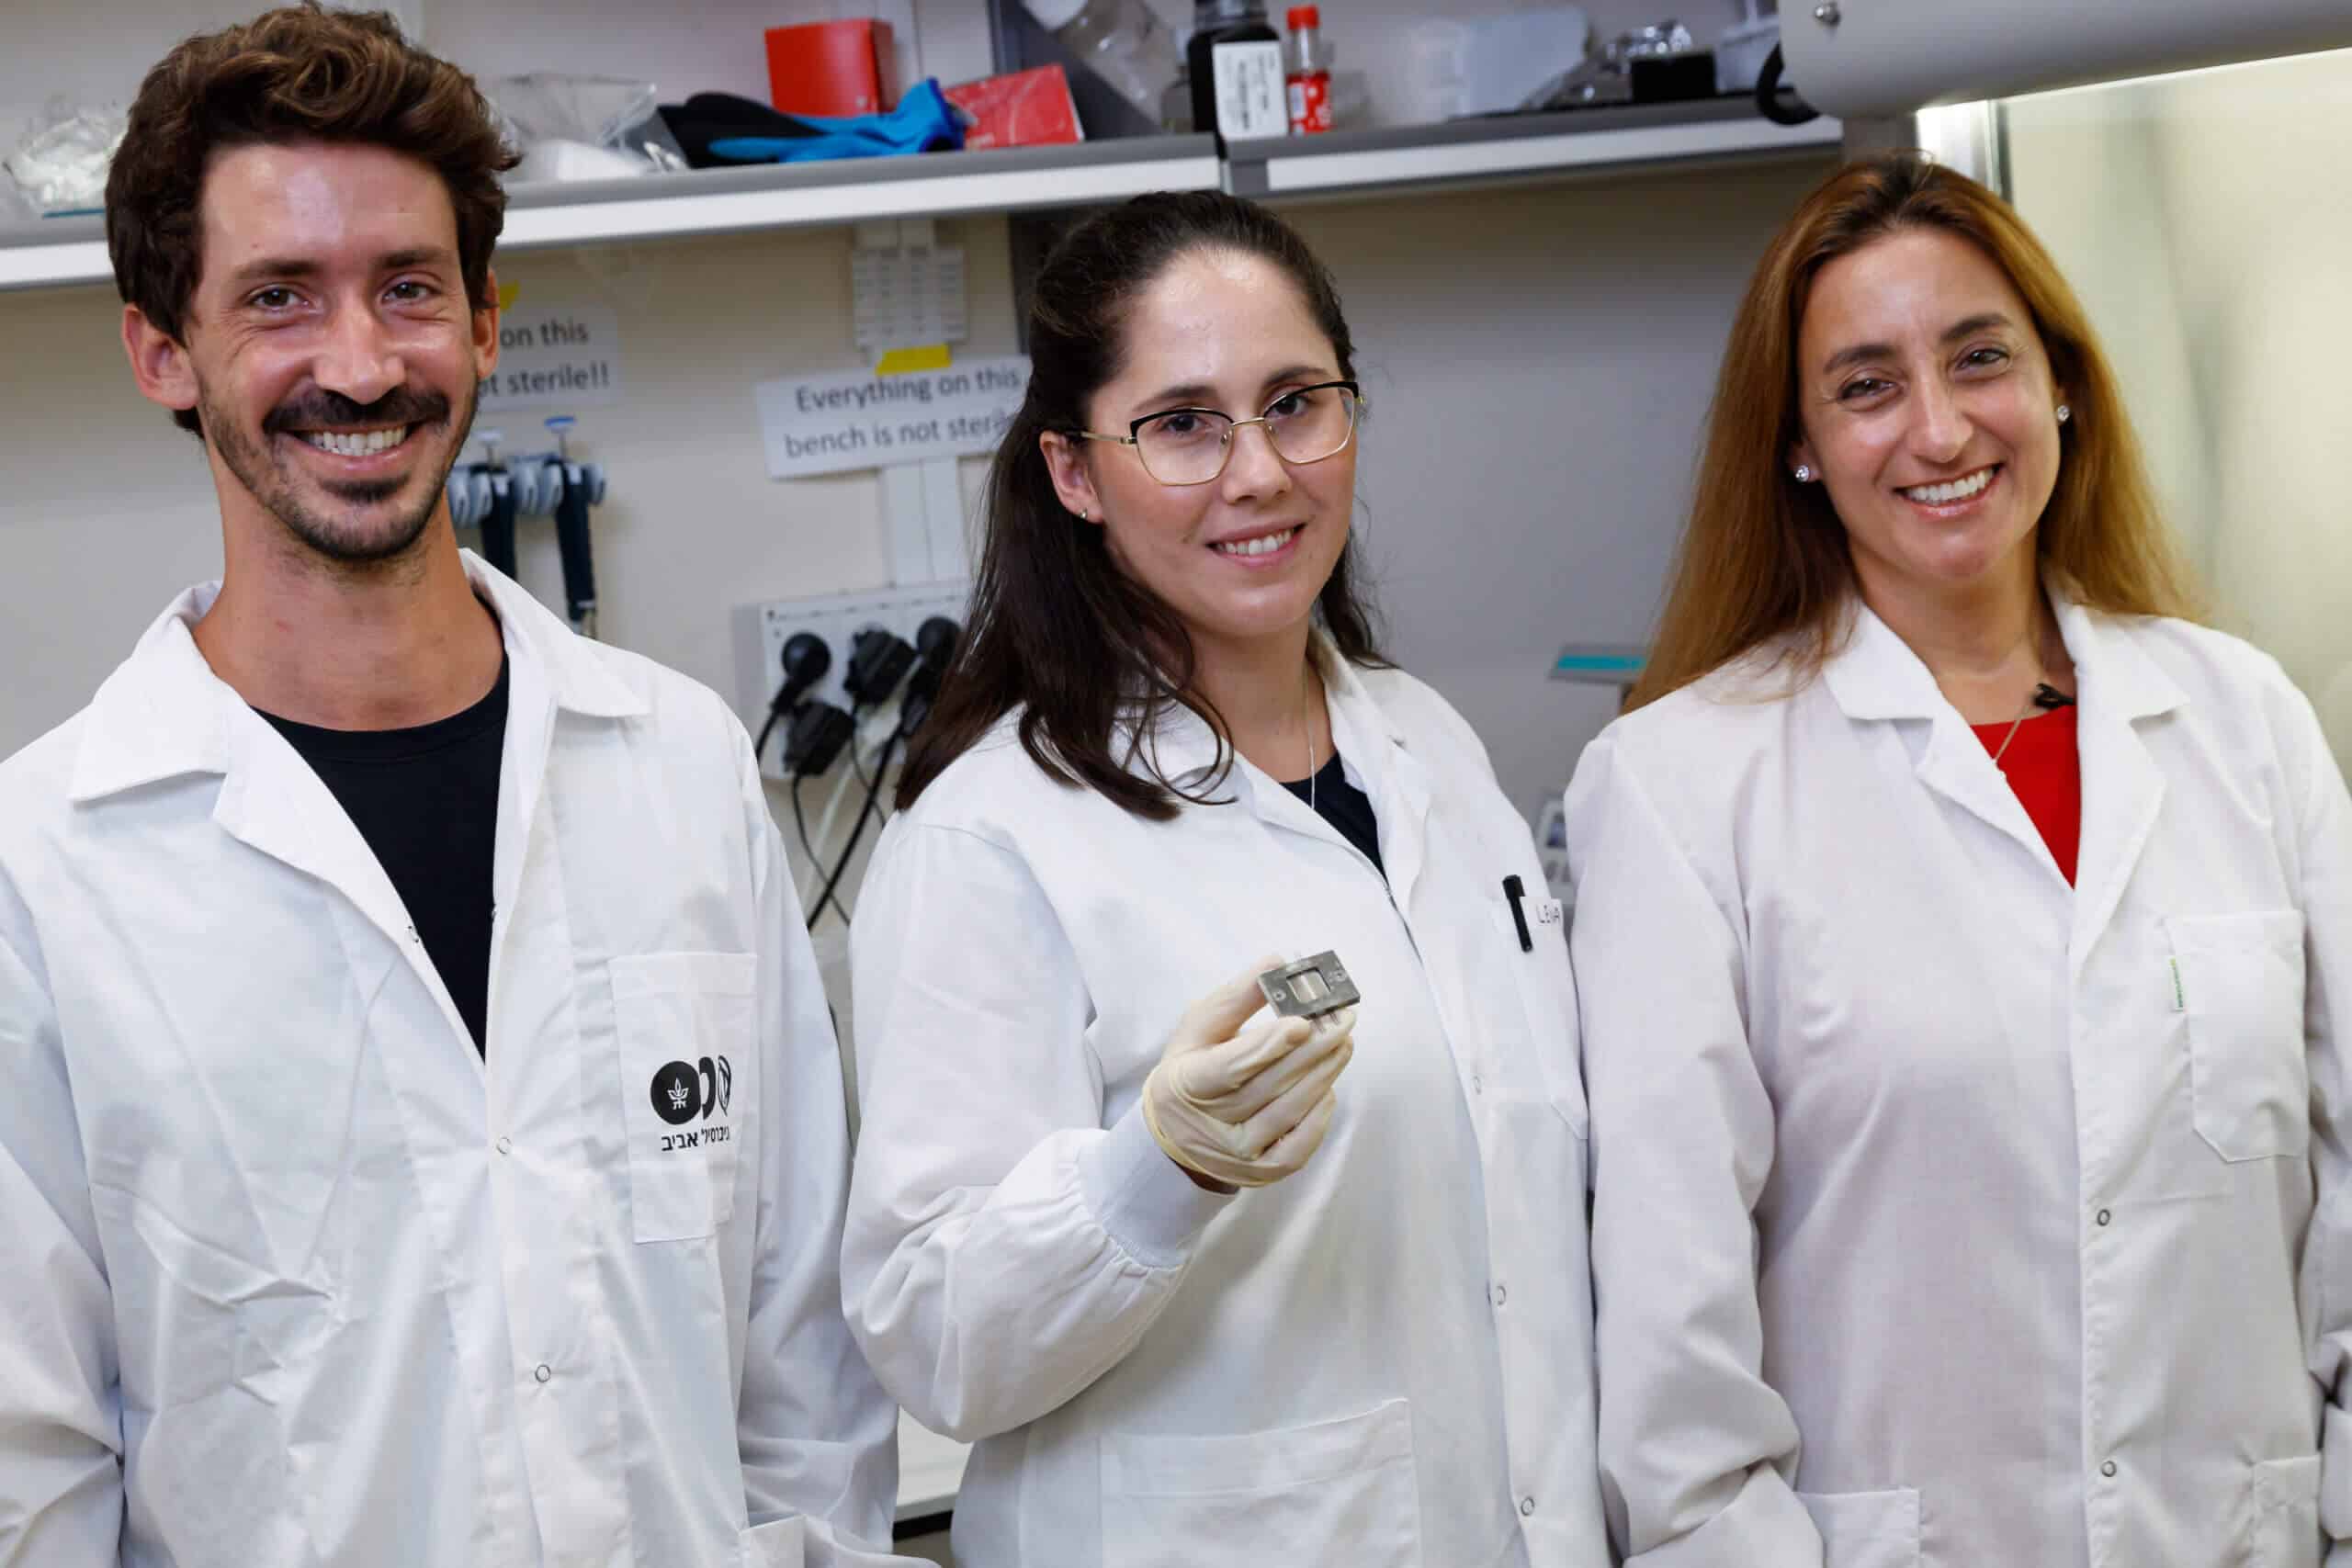 فريق البحث (من اليمين إلى اليسار): رونيت ساتشي فاينيرو، لينا نيوفيلد، عيلام عيني. الصورة: المتحدث باسم جامعة تل أبيب